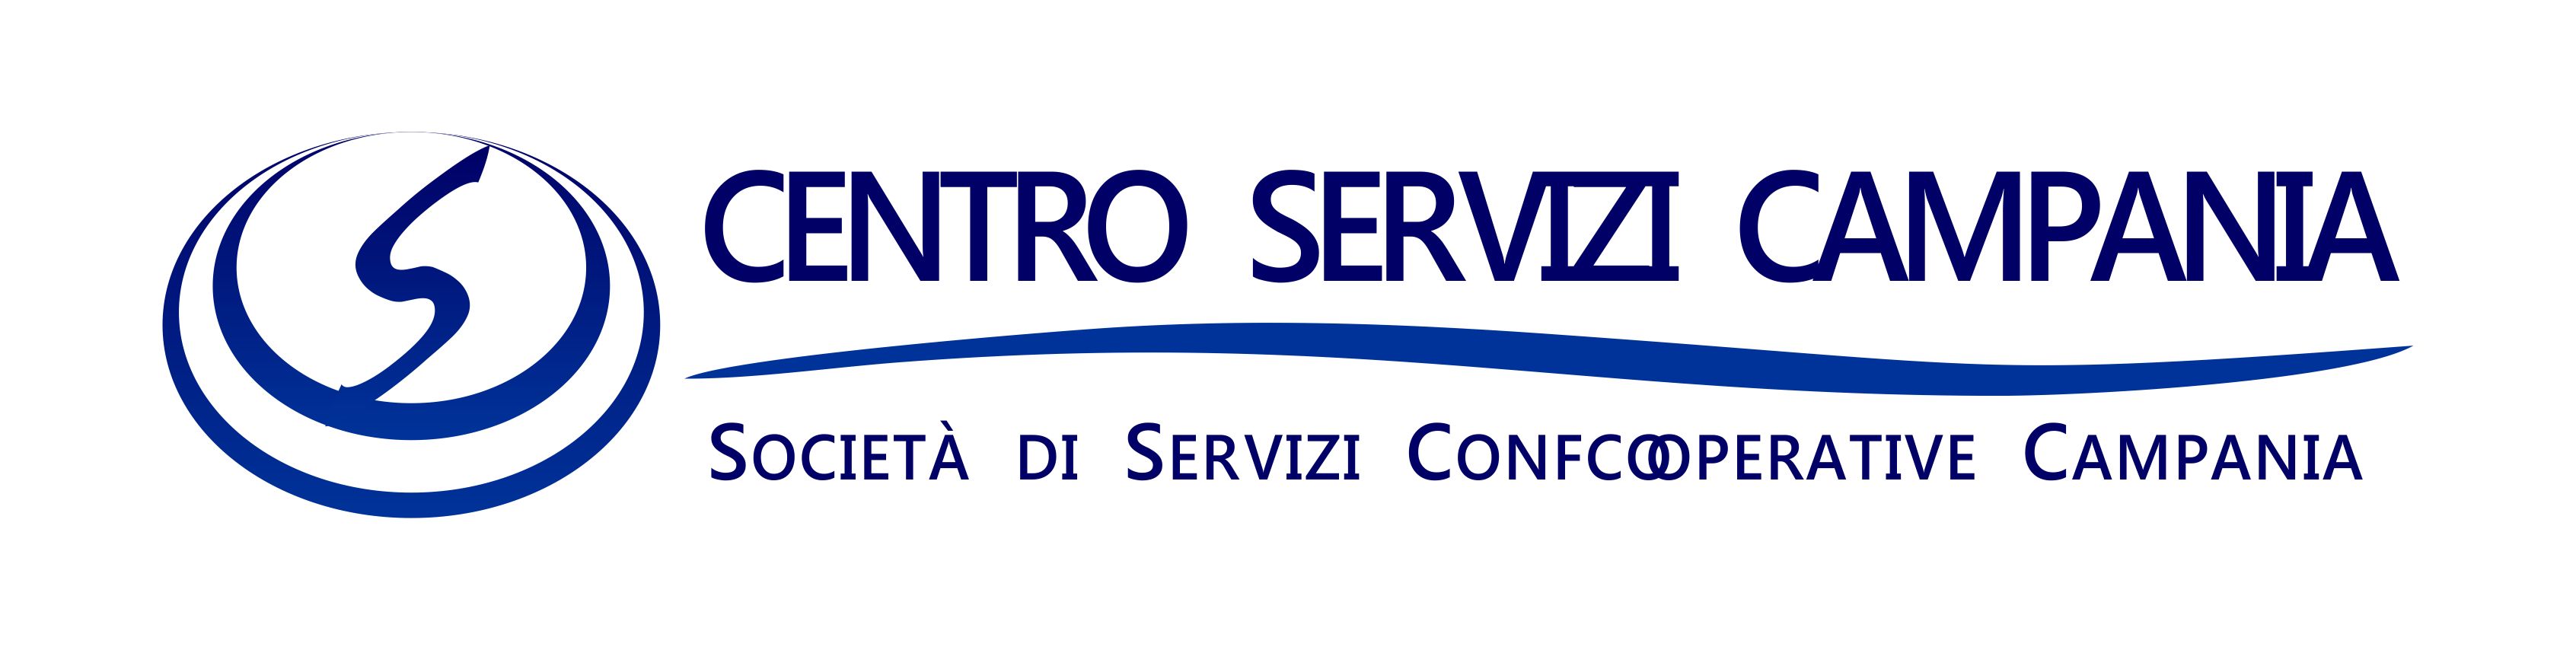 Centro Servizi Campania: per i cooperatori una gamma di servizi specialistici